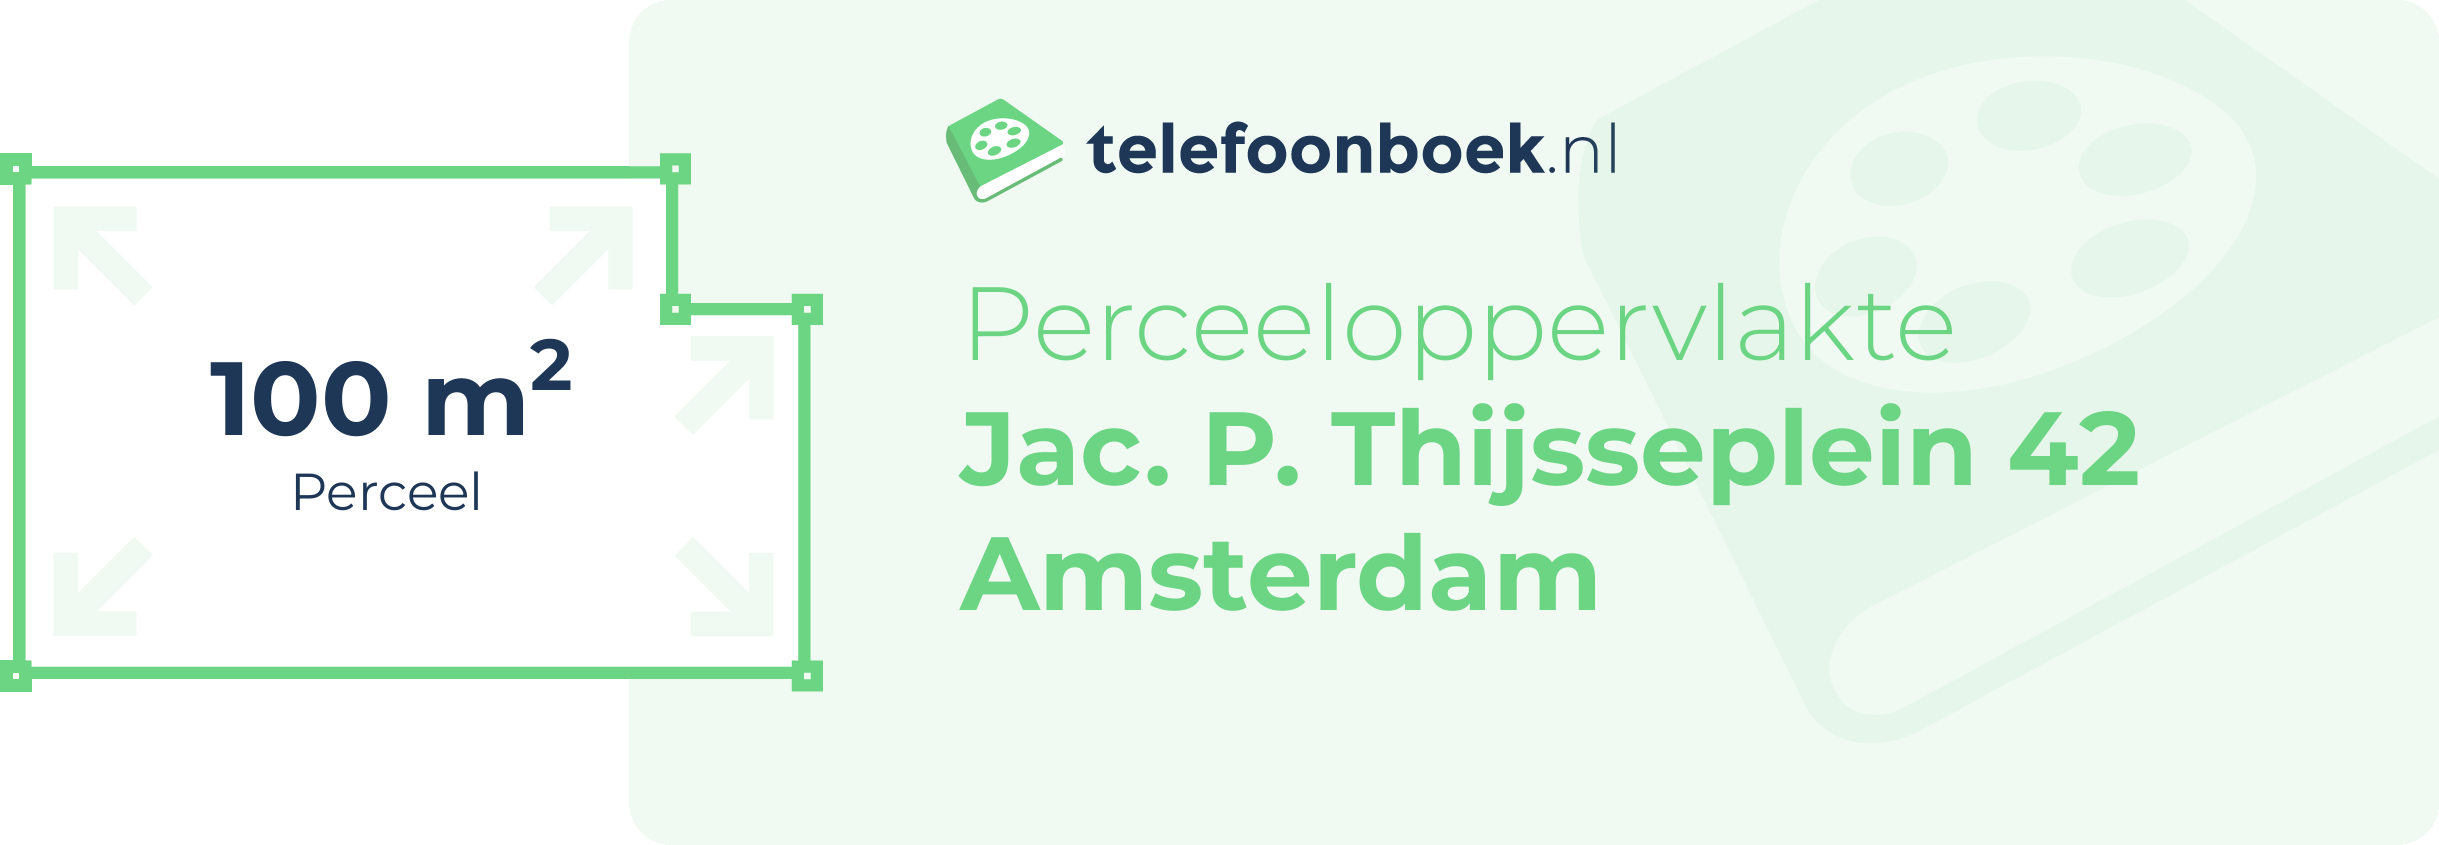 Perceeloppervlakte Jac. P. Thijsseplein 42 Amsterdam